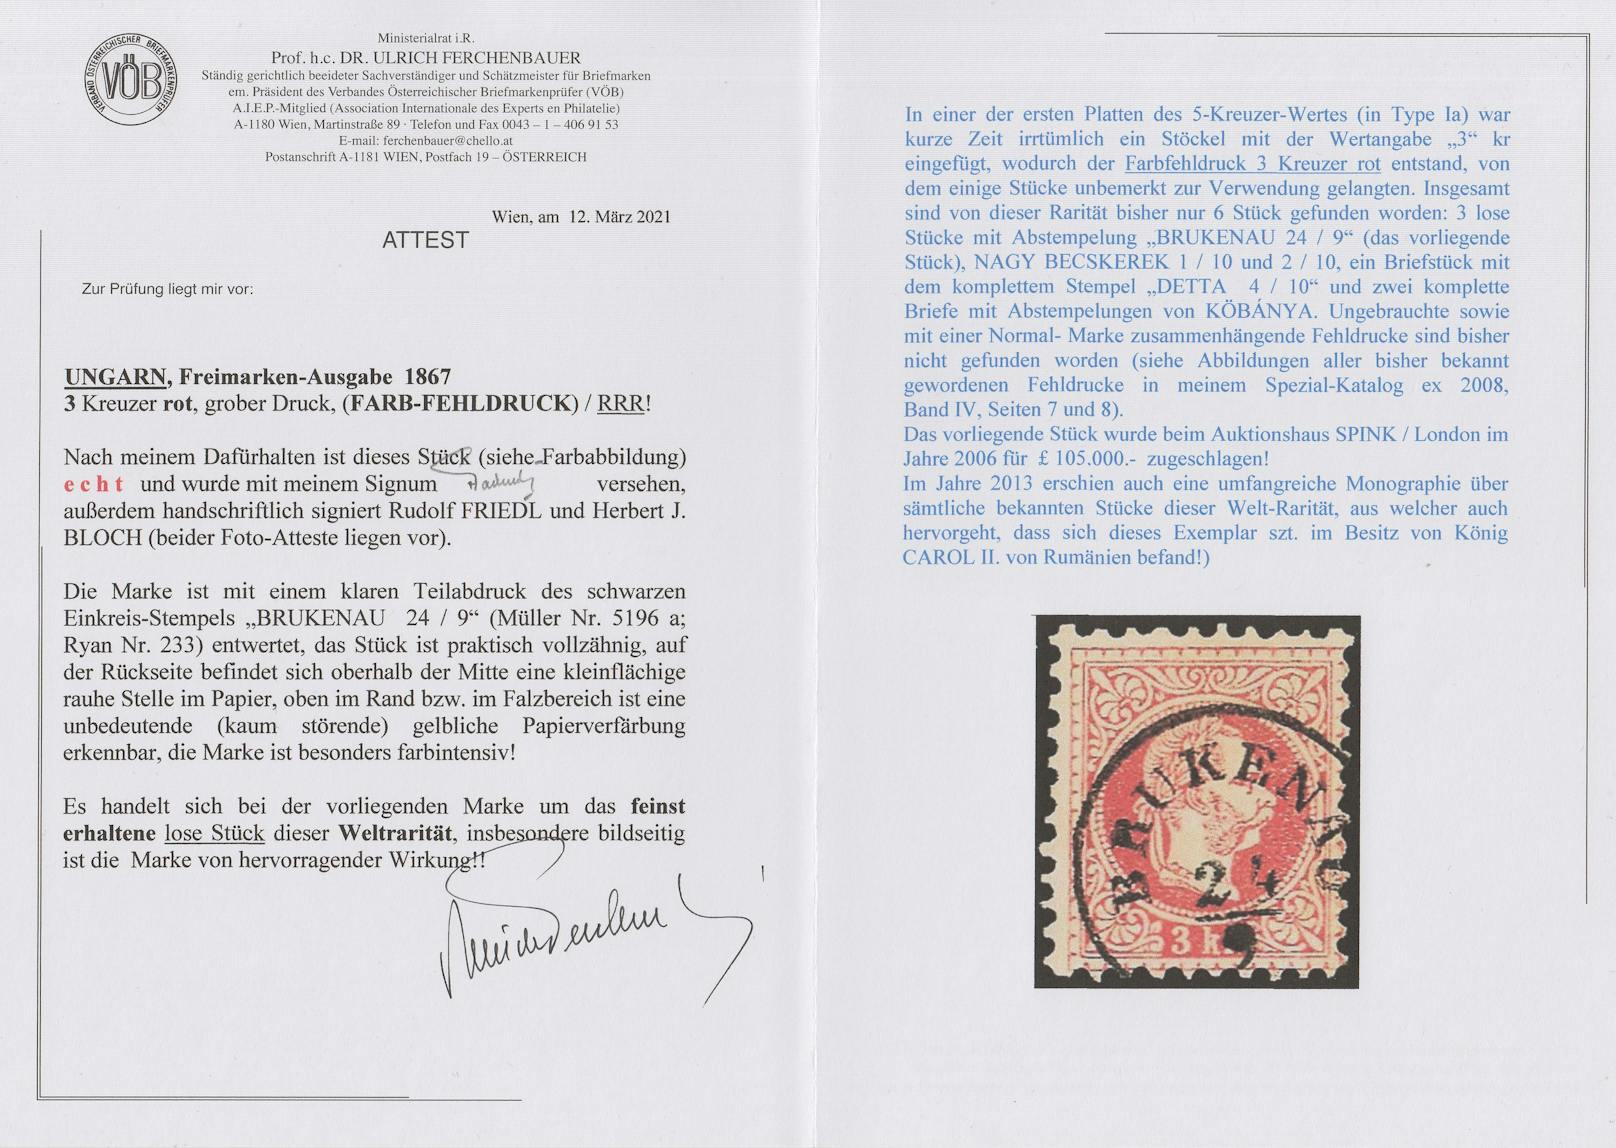 Attest des Briefmarkenprüfers Ulrich Ferchenbauer für die vorliegende 3-Kreuzer-Marke in Farbfehldruck Rot anstatt Grün.